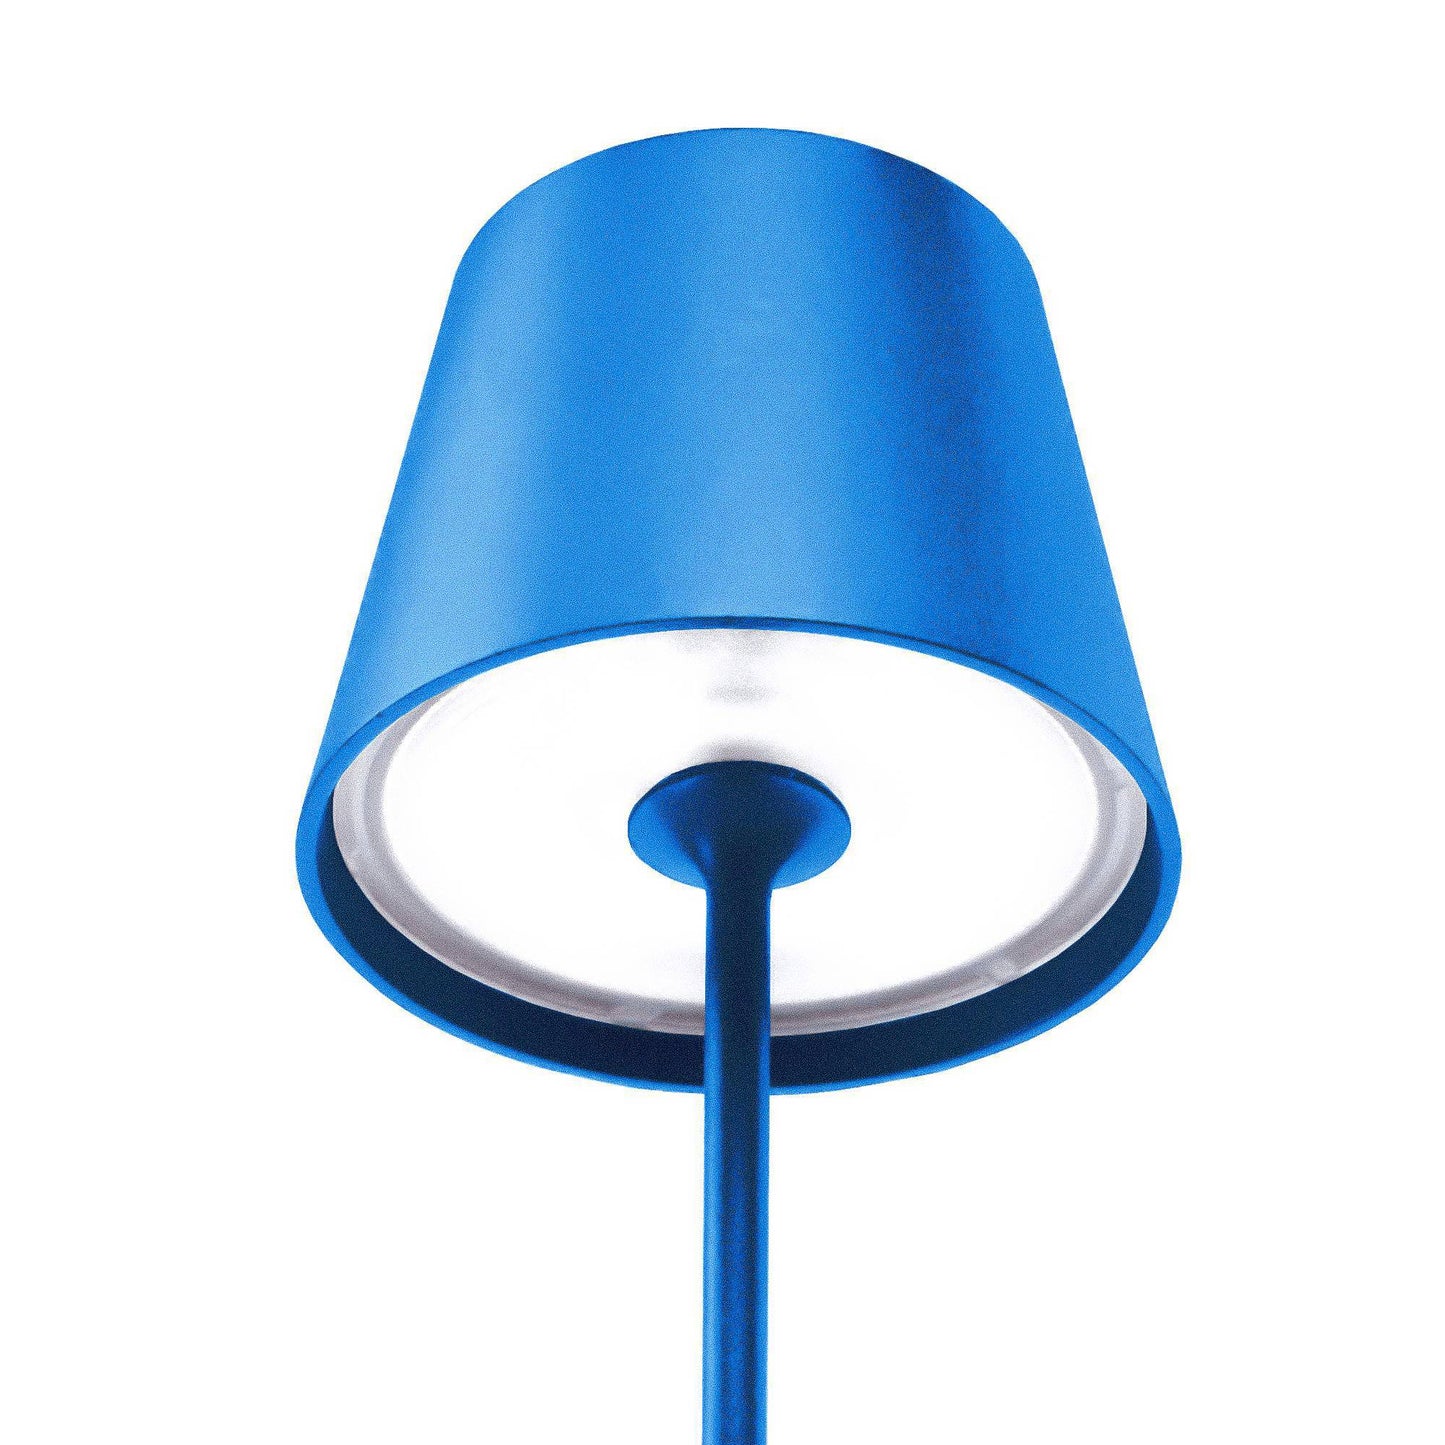 Kelù Chloé Mare Lampada da tavolo LED senza fili ricaricabile H38cm, dimmer touch 200 lumen, ricarica wireless, corpo in alluminio blu, durata 9 ore, IP54